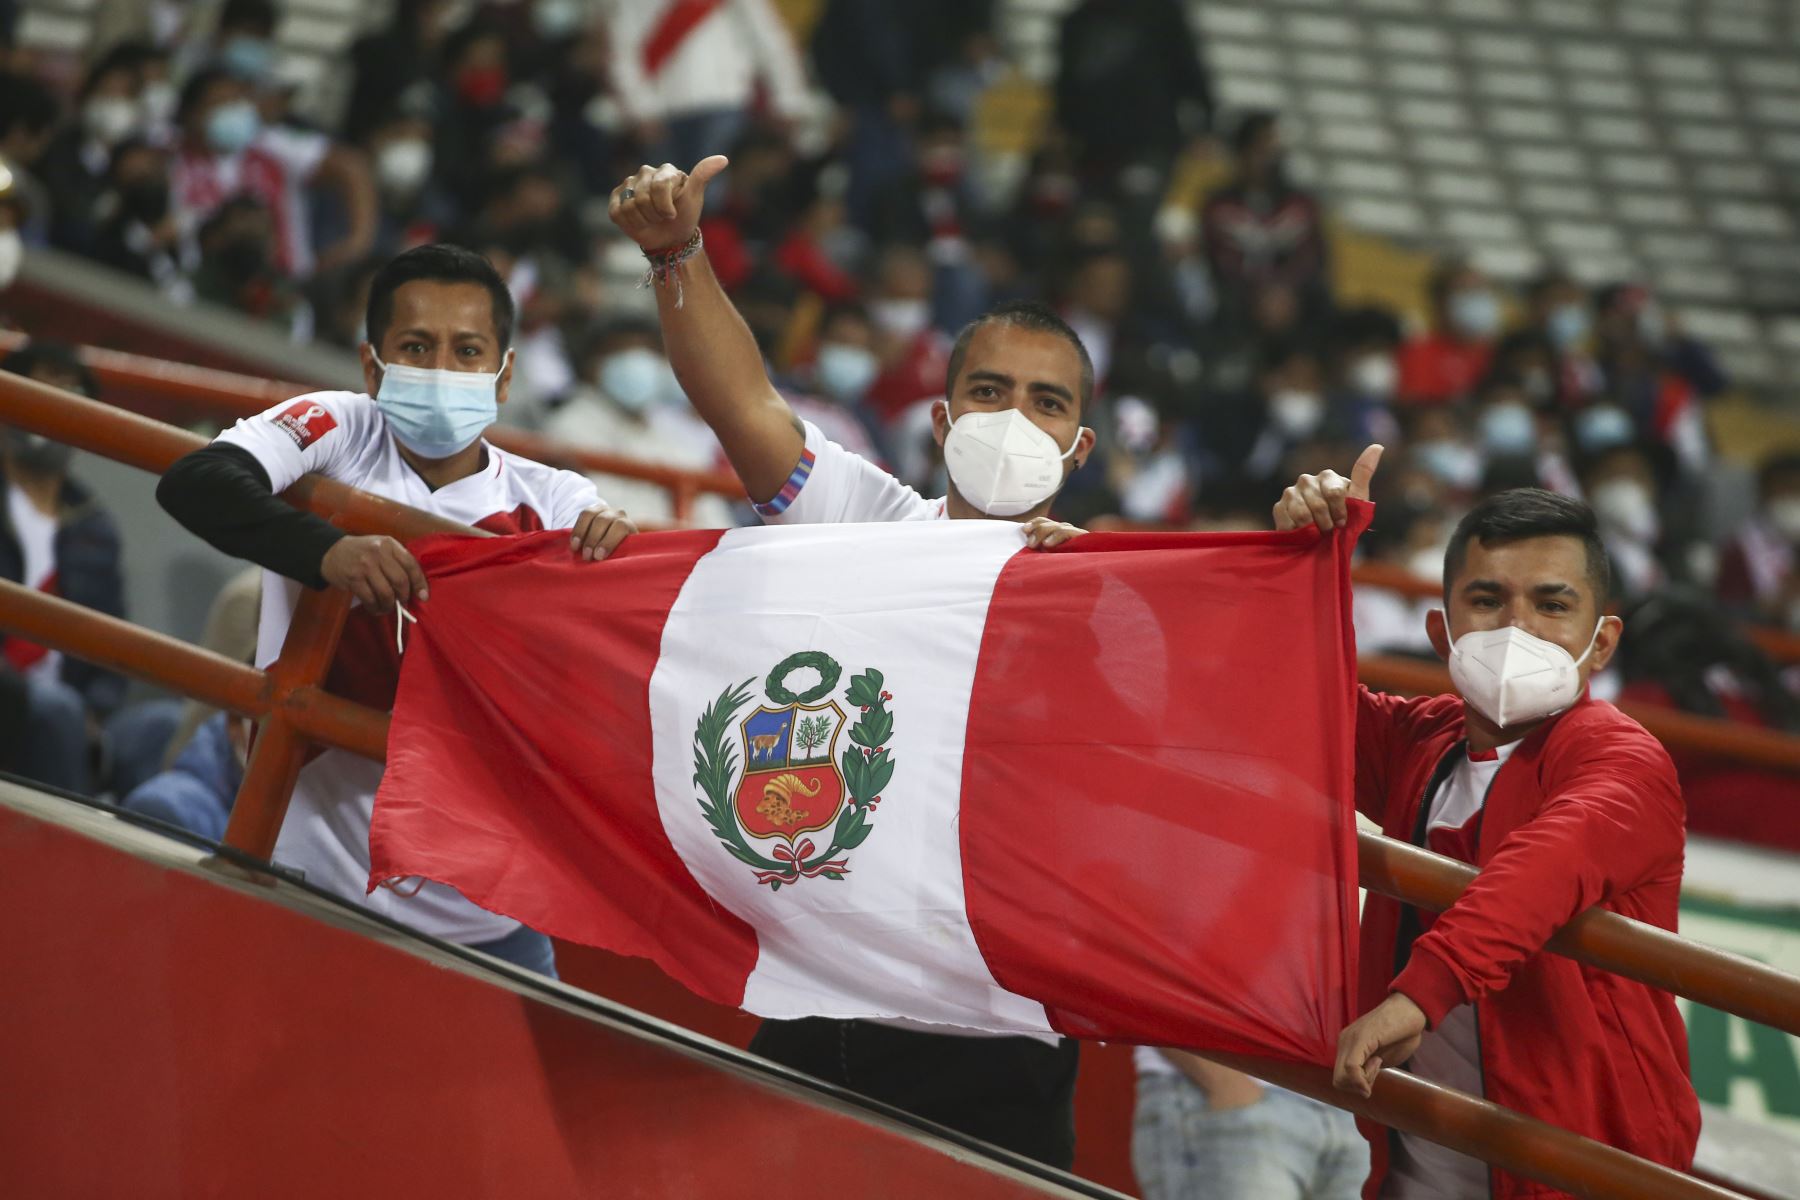 Selección peruana